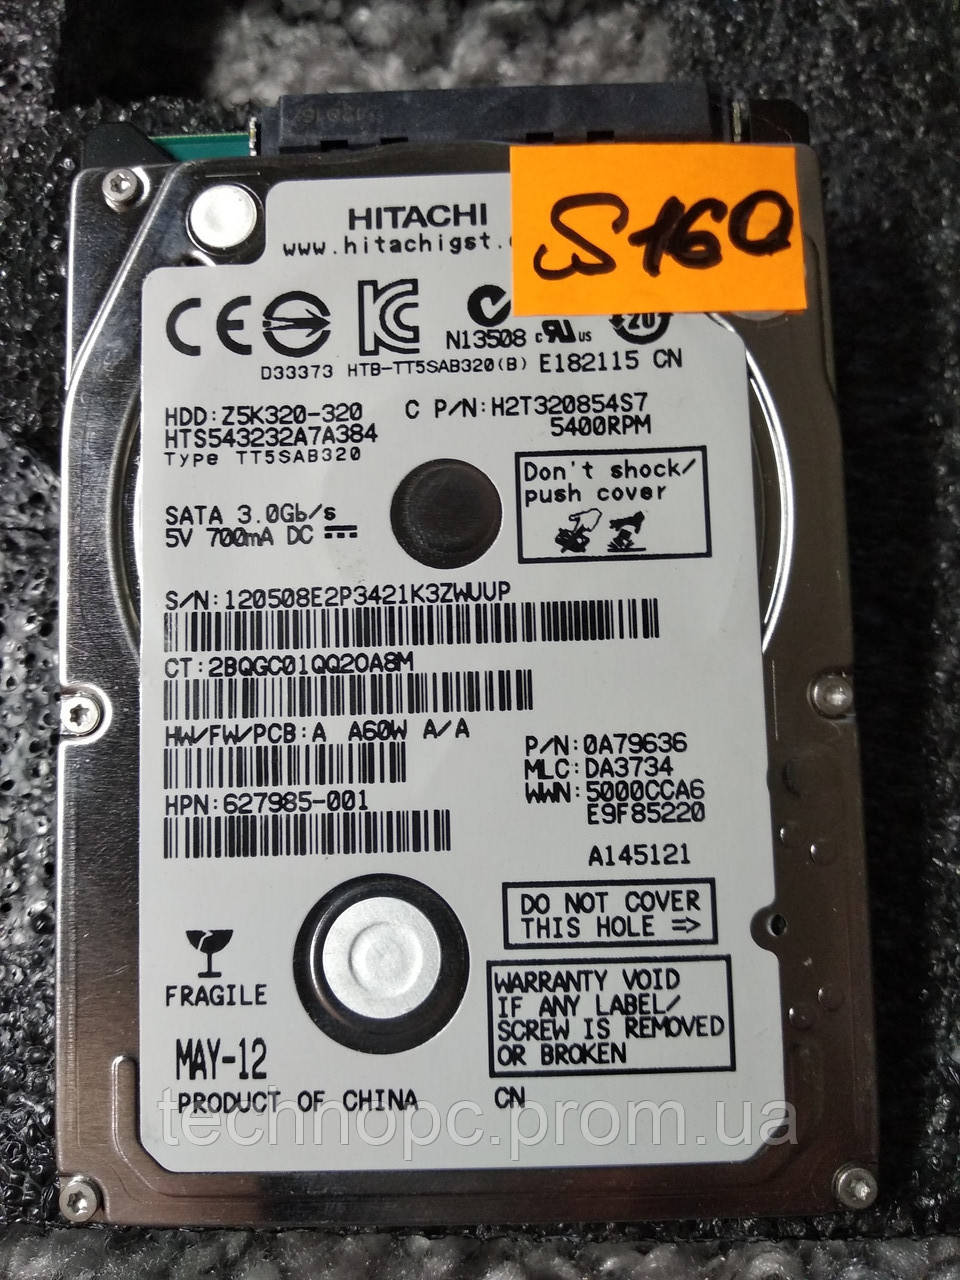 Жесткий диск 320GB Hitachi HDD для ноутбука, общая наработка 10 дней, 